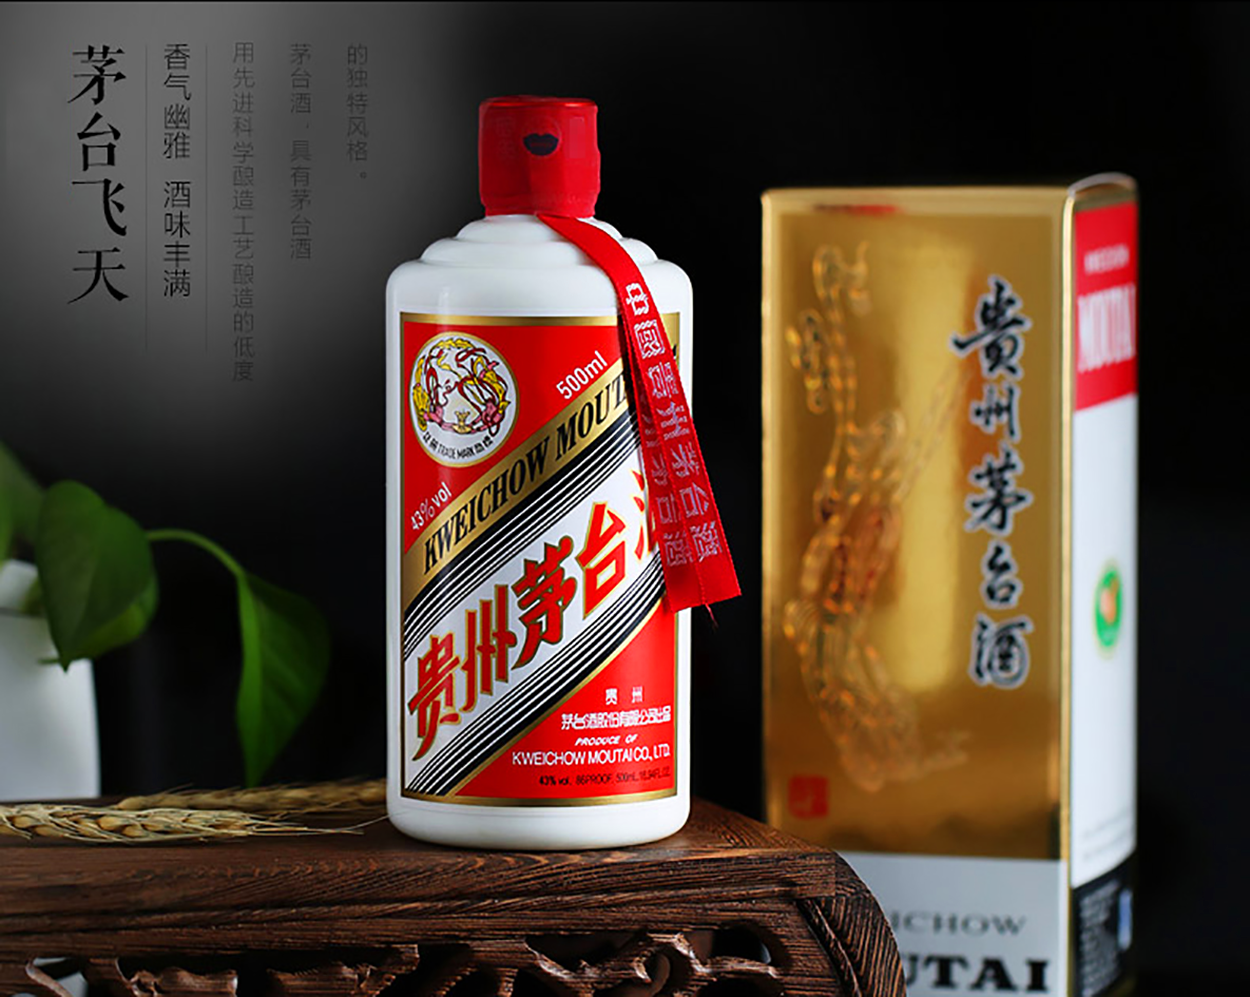 贵州茅台酱香酒包装设计欣赏1.png